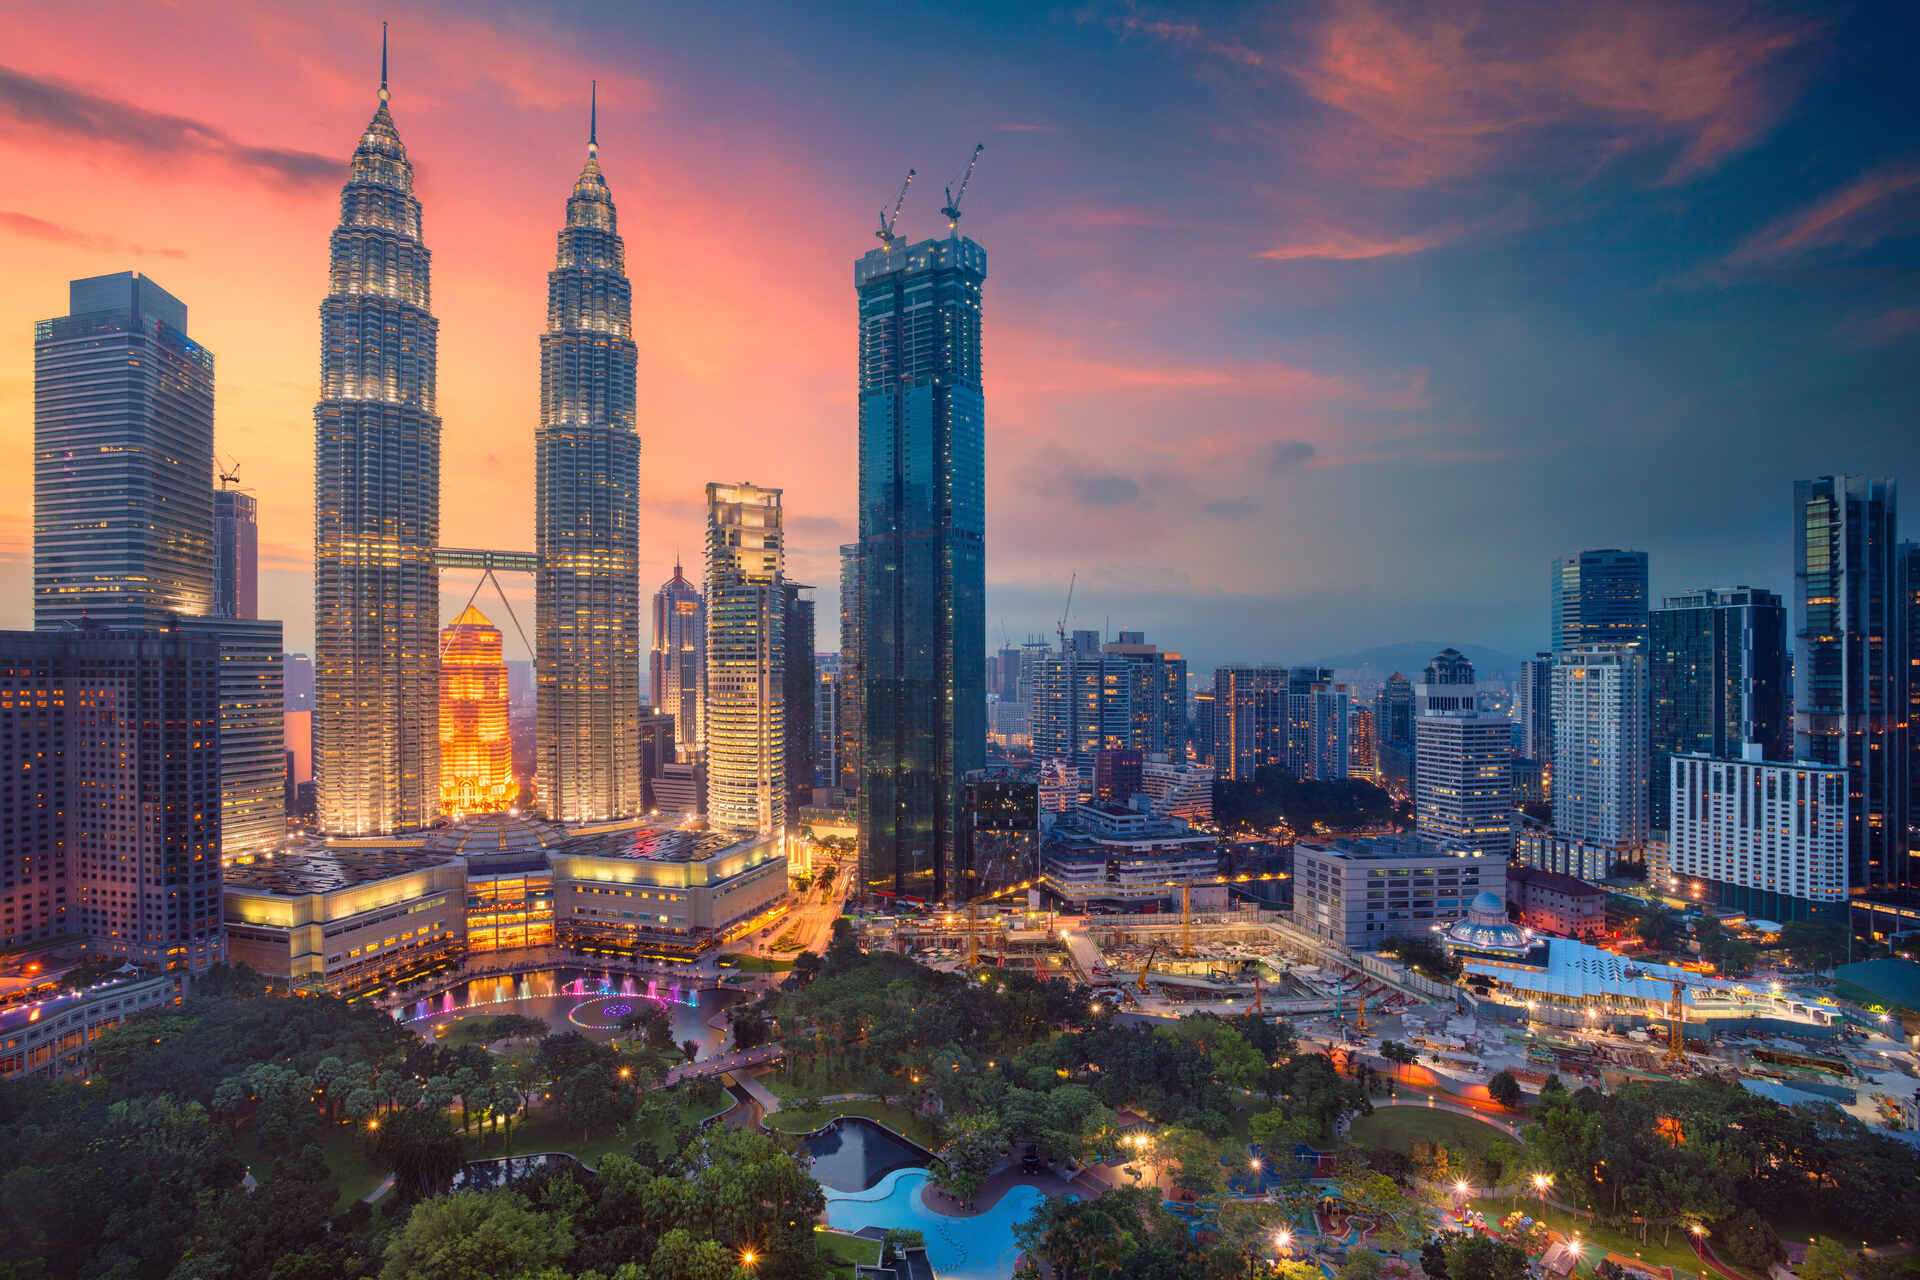 Cityscape image of Kuala Lumpur, Malaysia during sunset